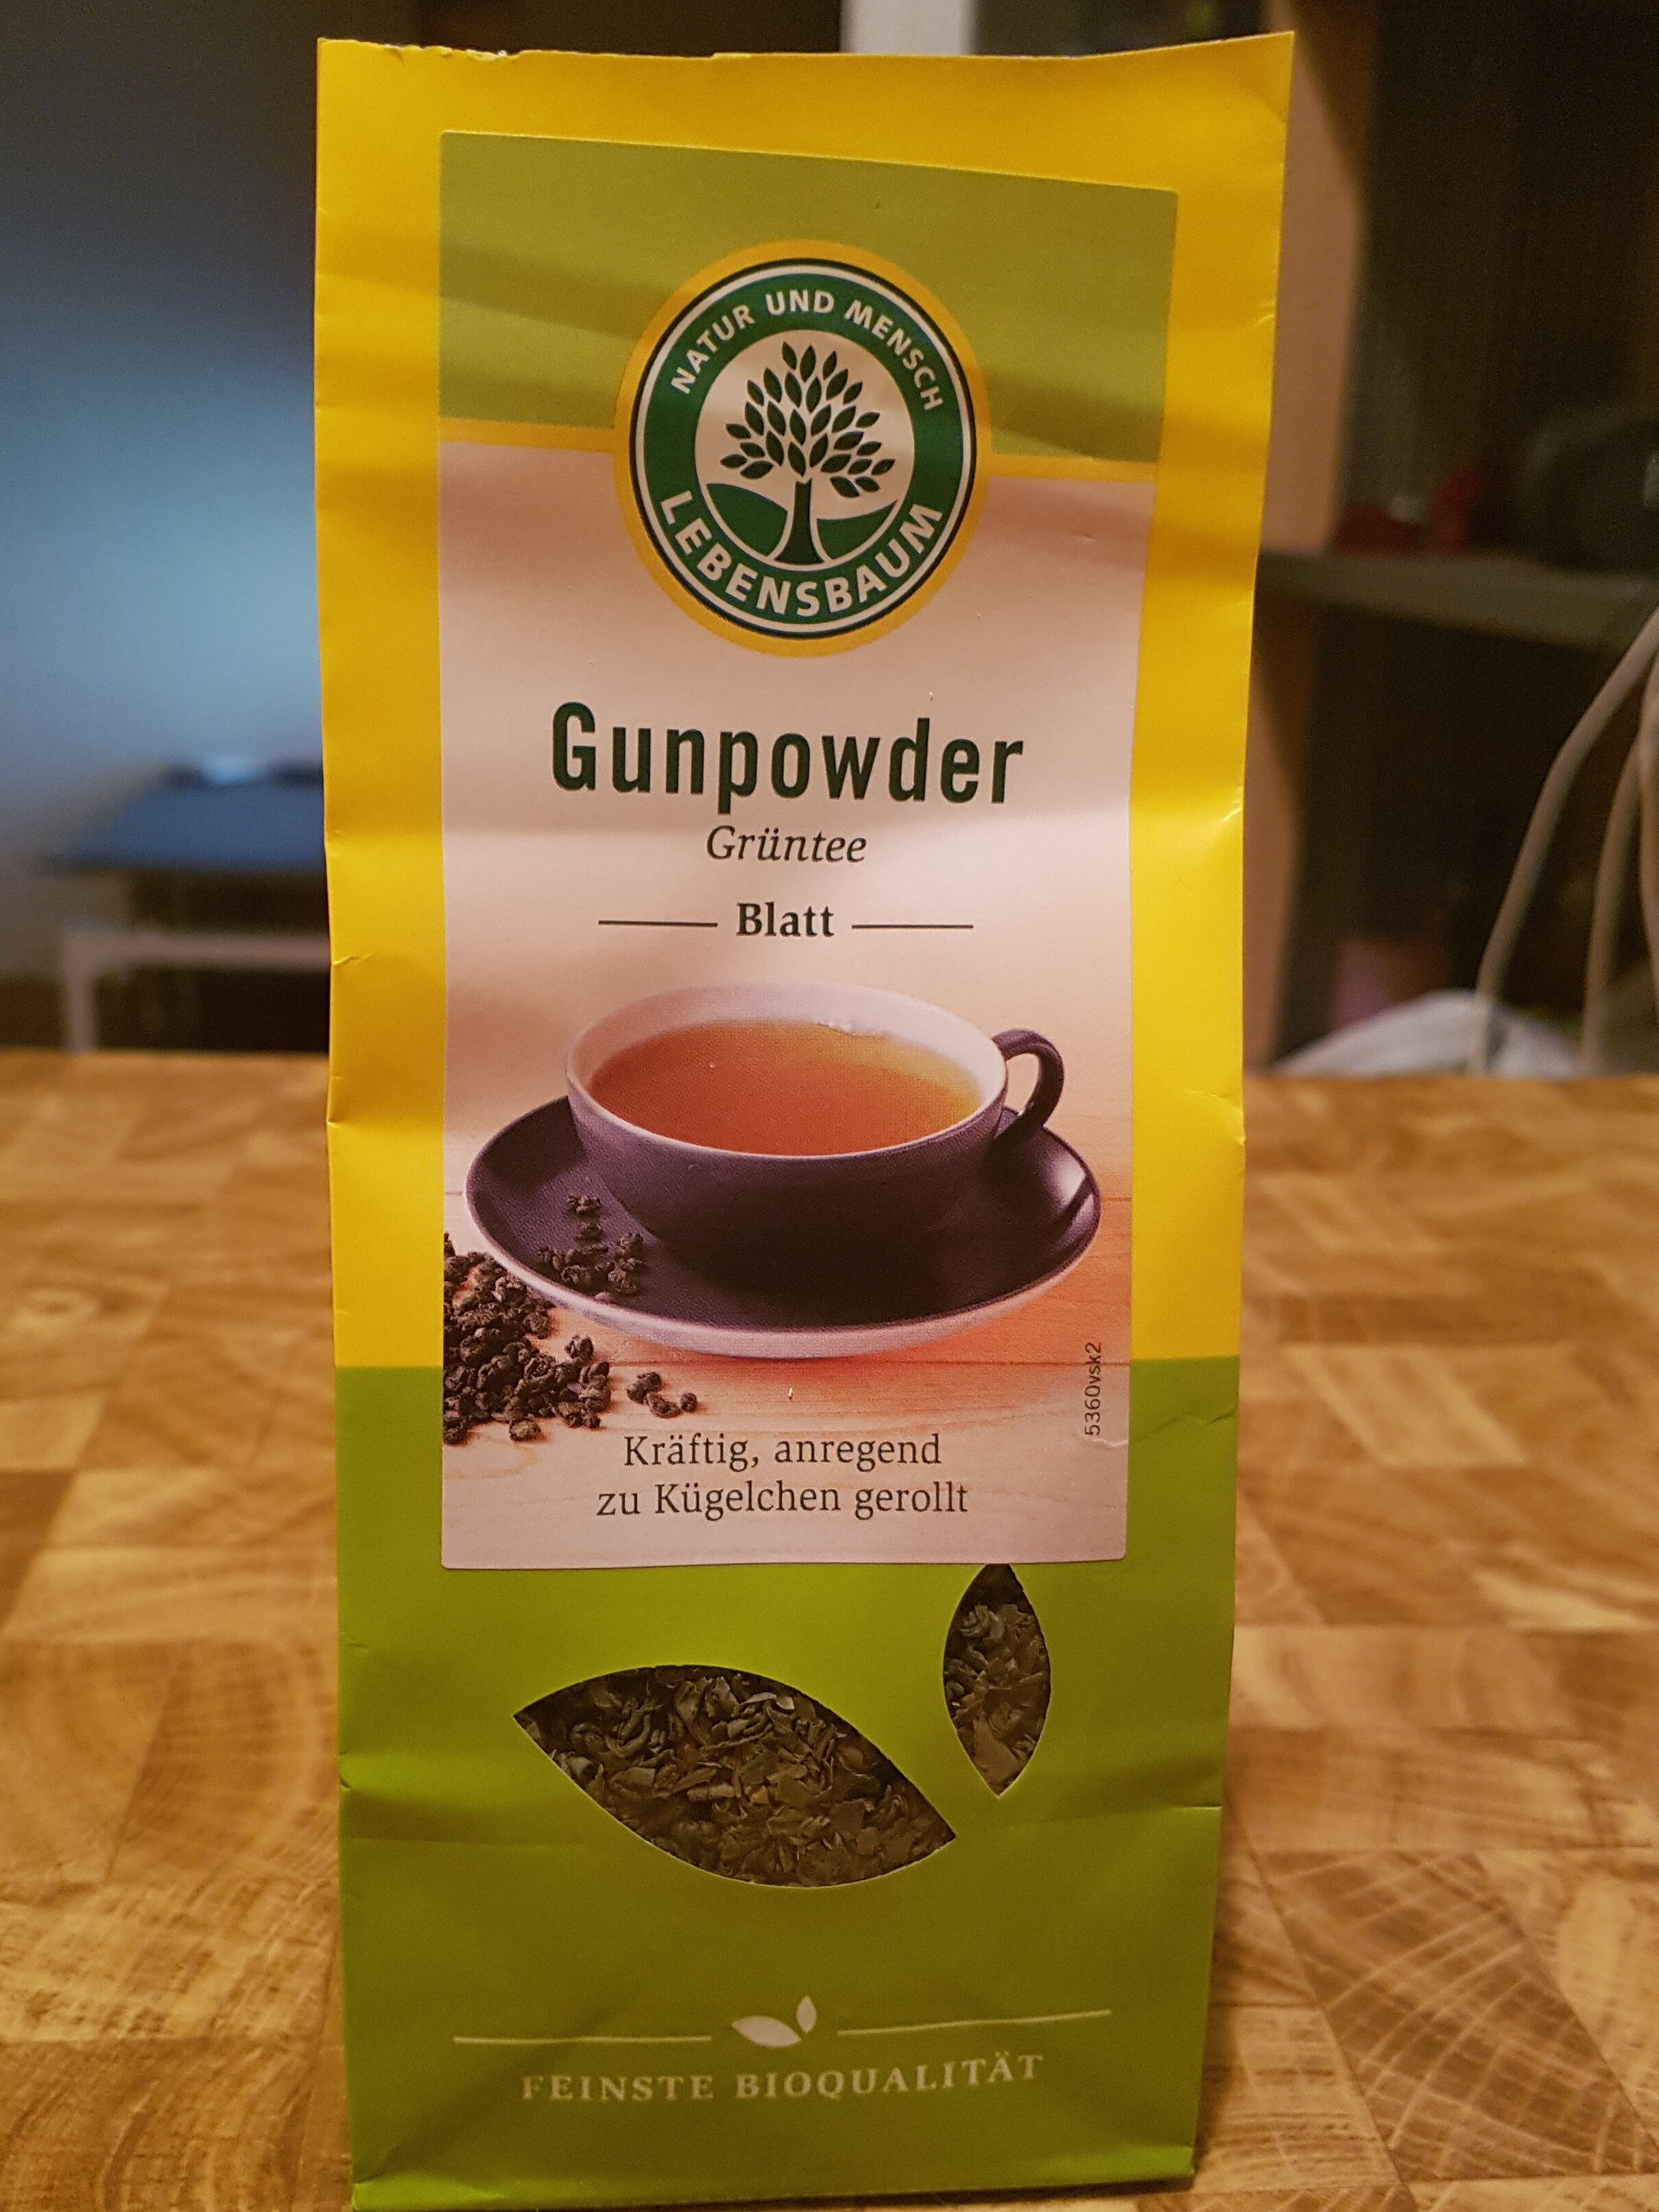 Gunpowder grüntee blatt - Product - fr